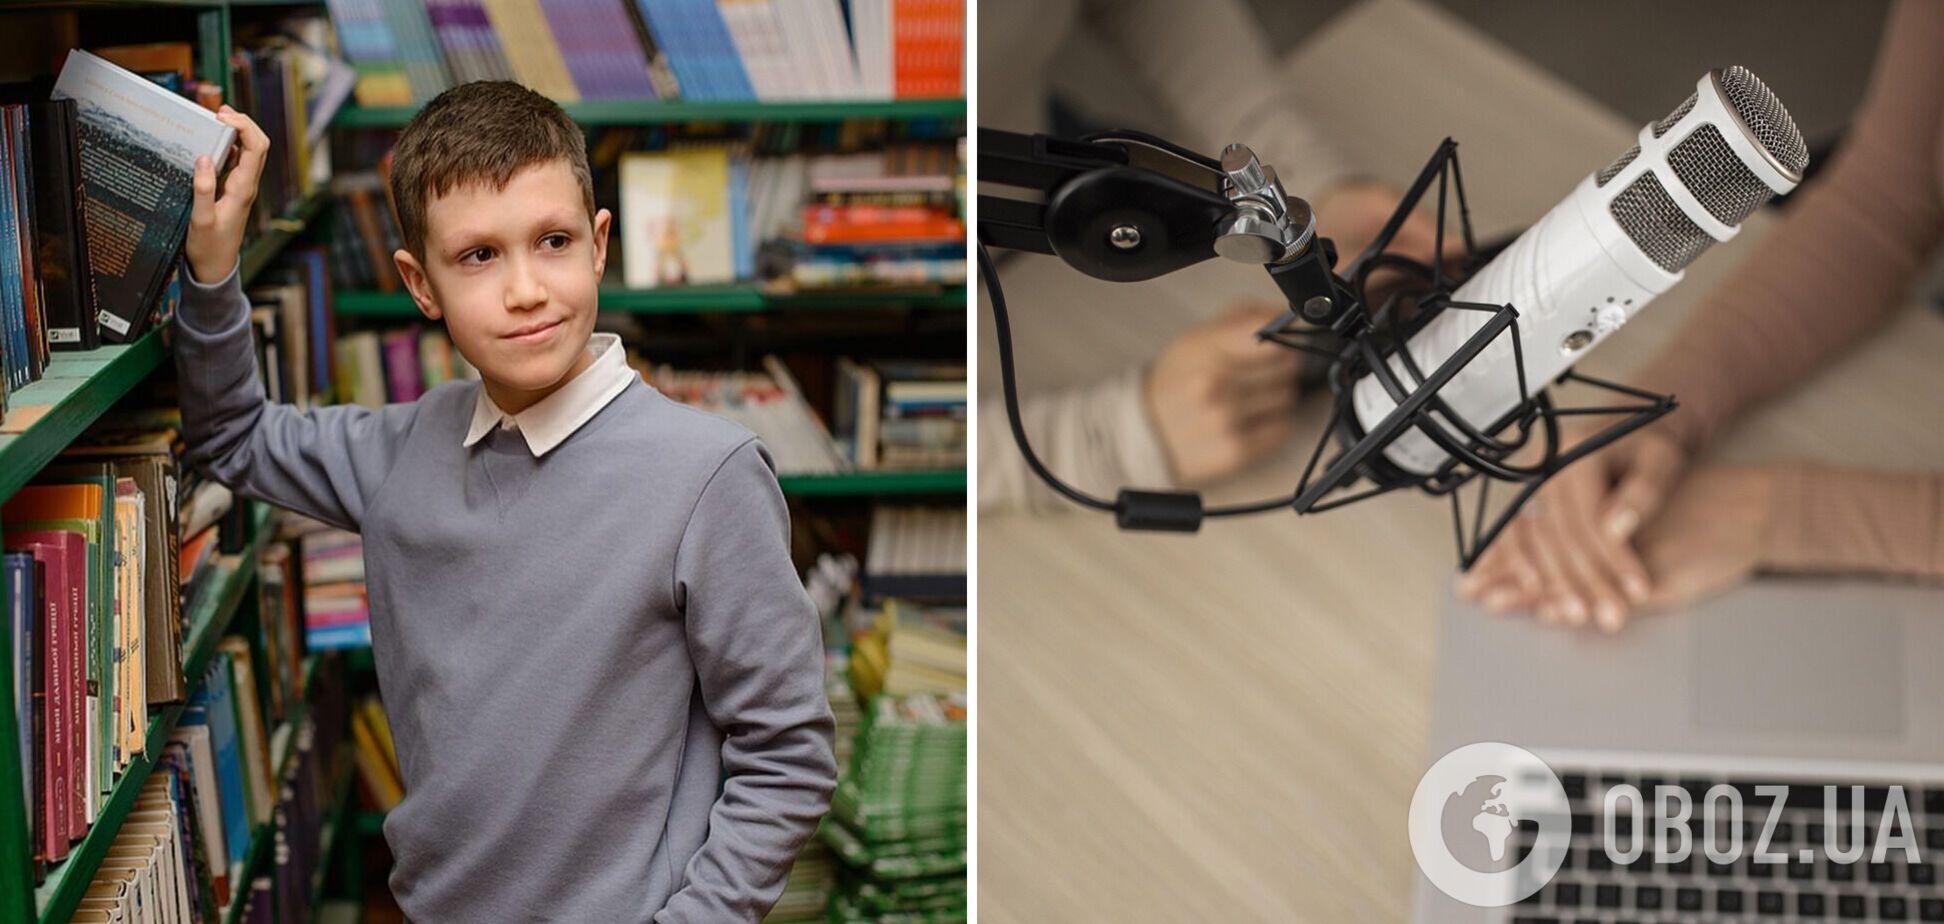 В 11 лет уже ломает стереотипы. Школьник родом из Донецка Захар Черников озвучивает аудиокниги для детей и учит украинскому языку других